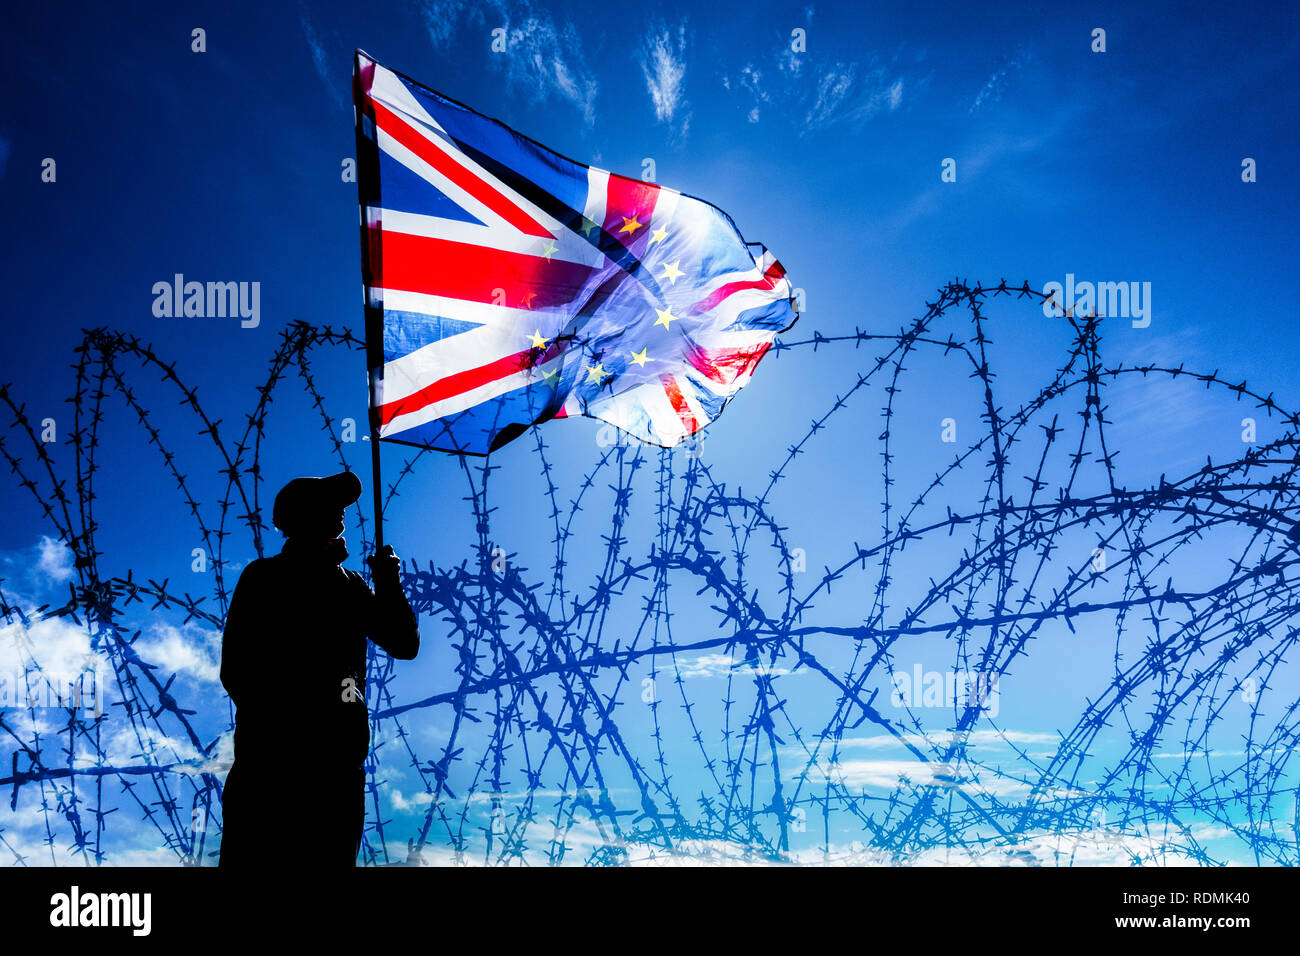 Mann winkte Union Jack/EU-Flagge hinter Stacheldraht zaun: Brexit, Einwanderung, Asyl und Grenzkontrollen... Konzept Bild Stockfoto